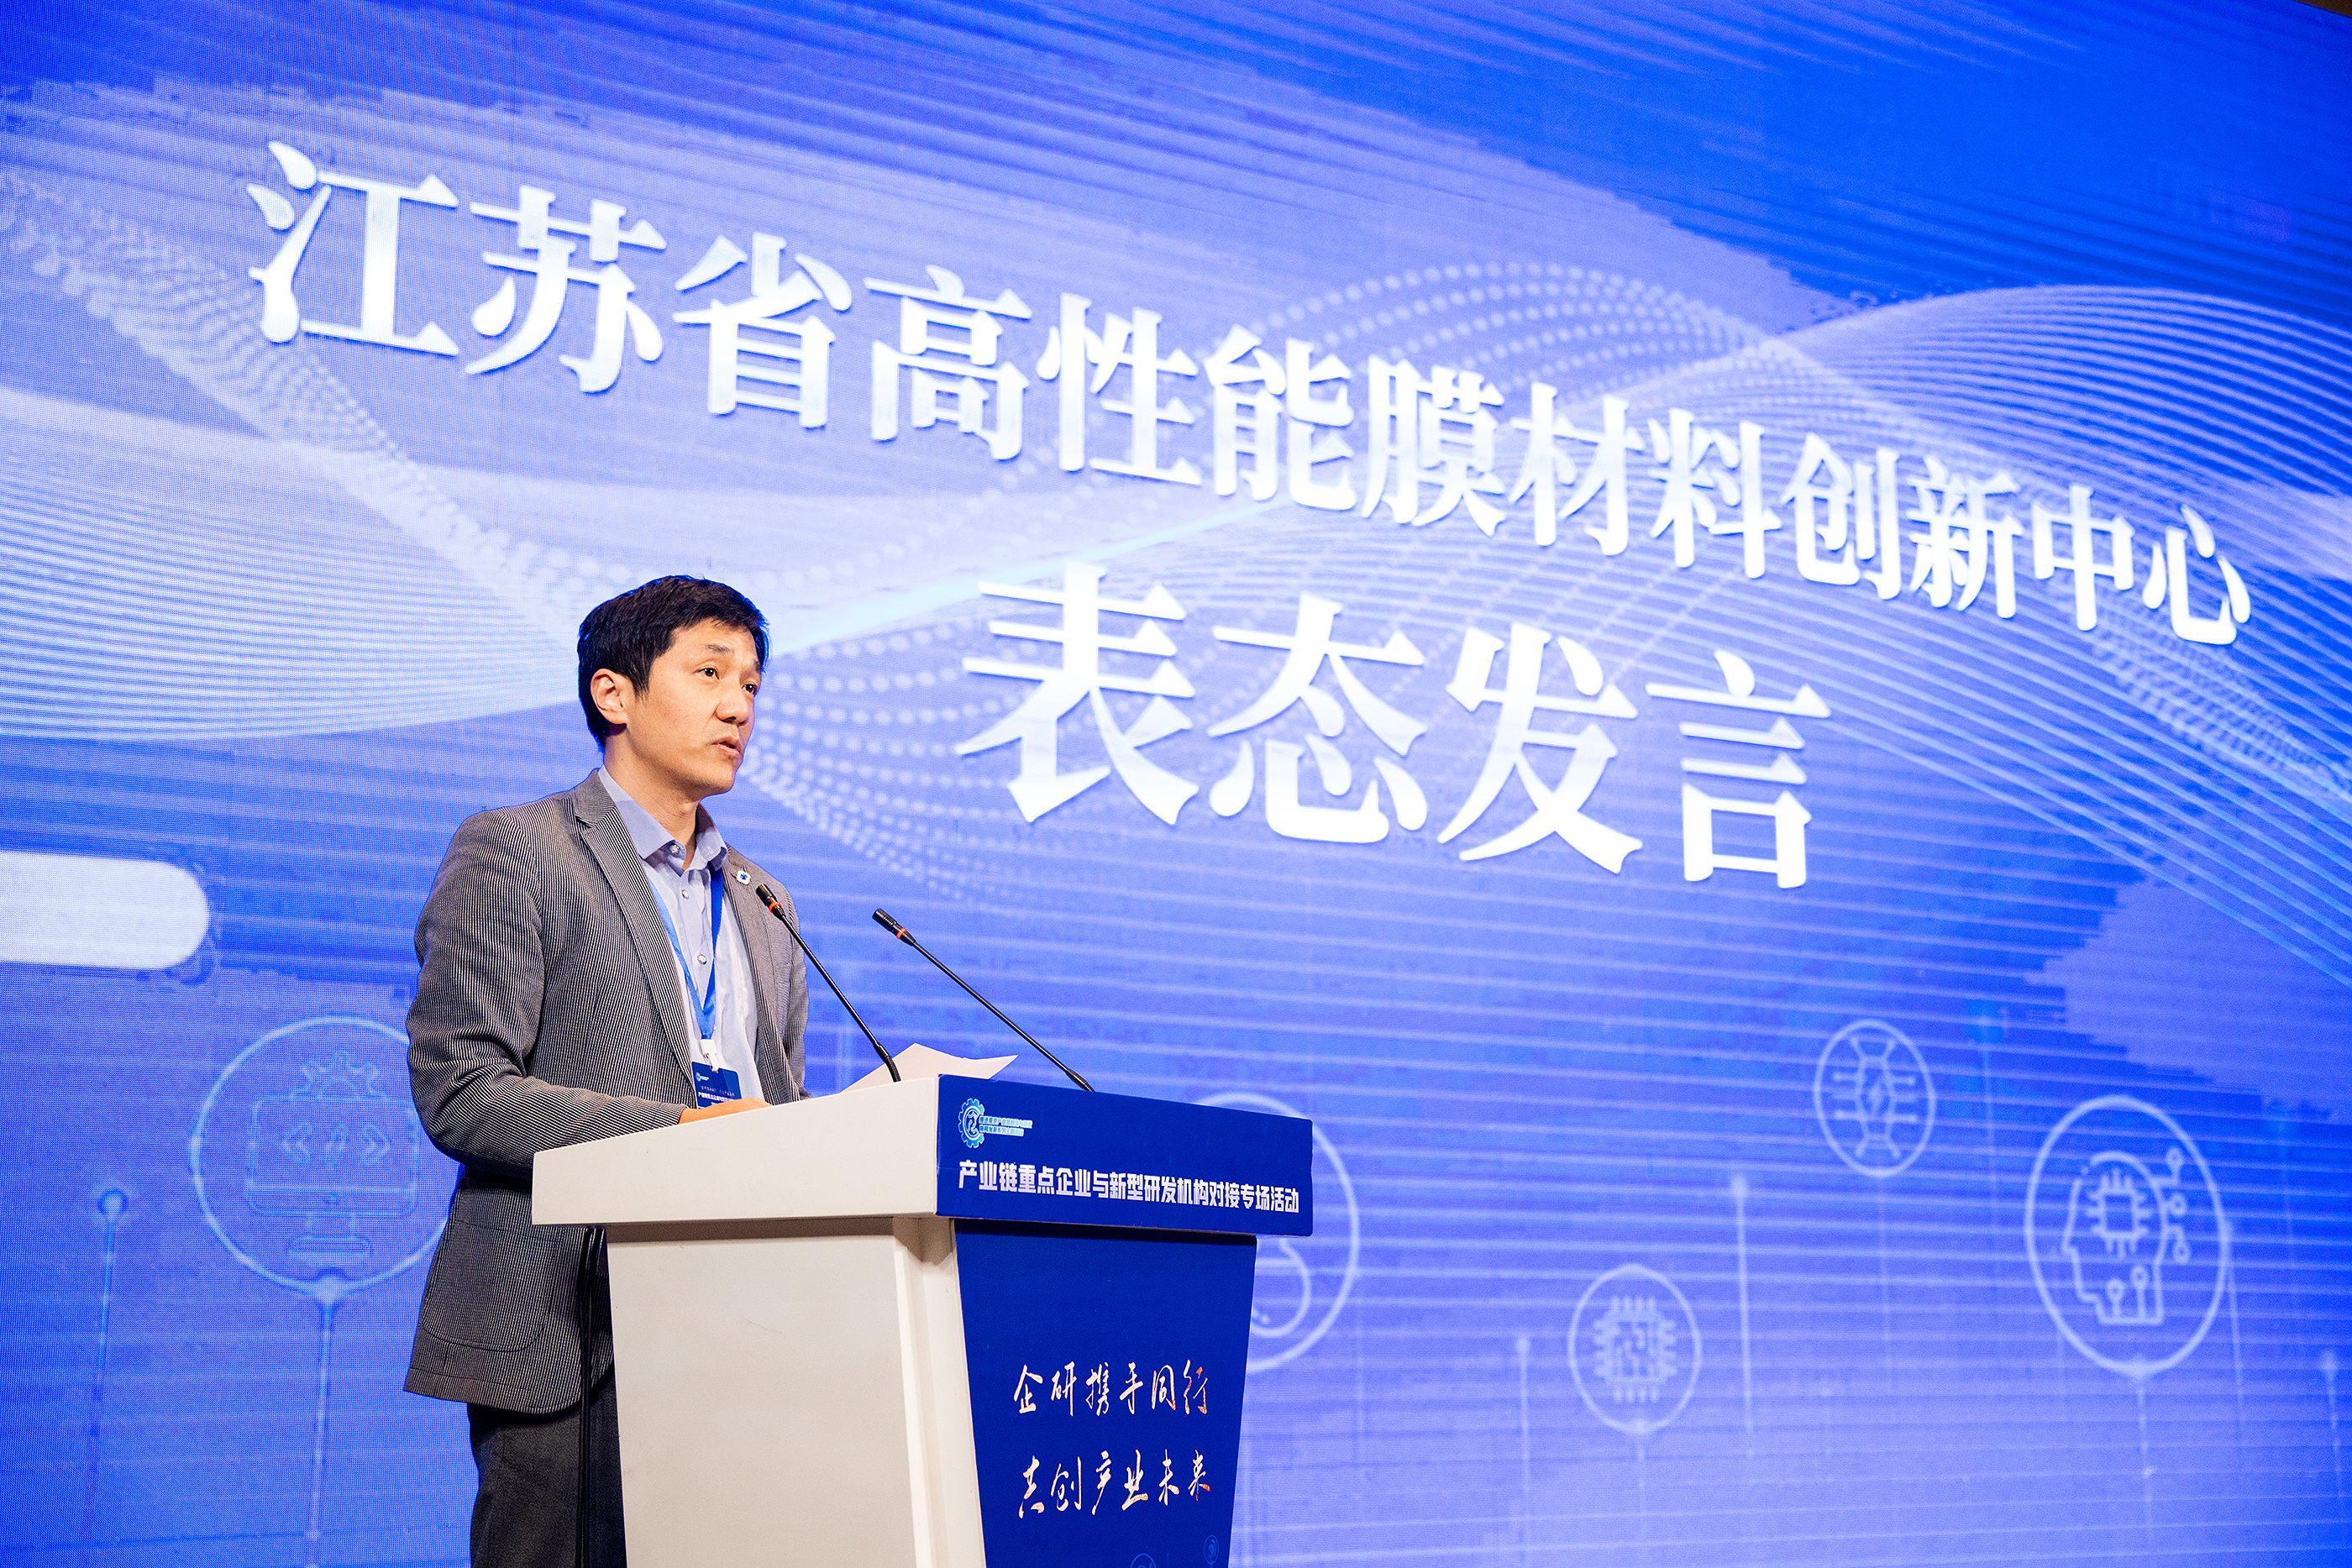 南京工大膜应用技术研究所所长李卫星。